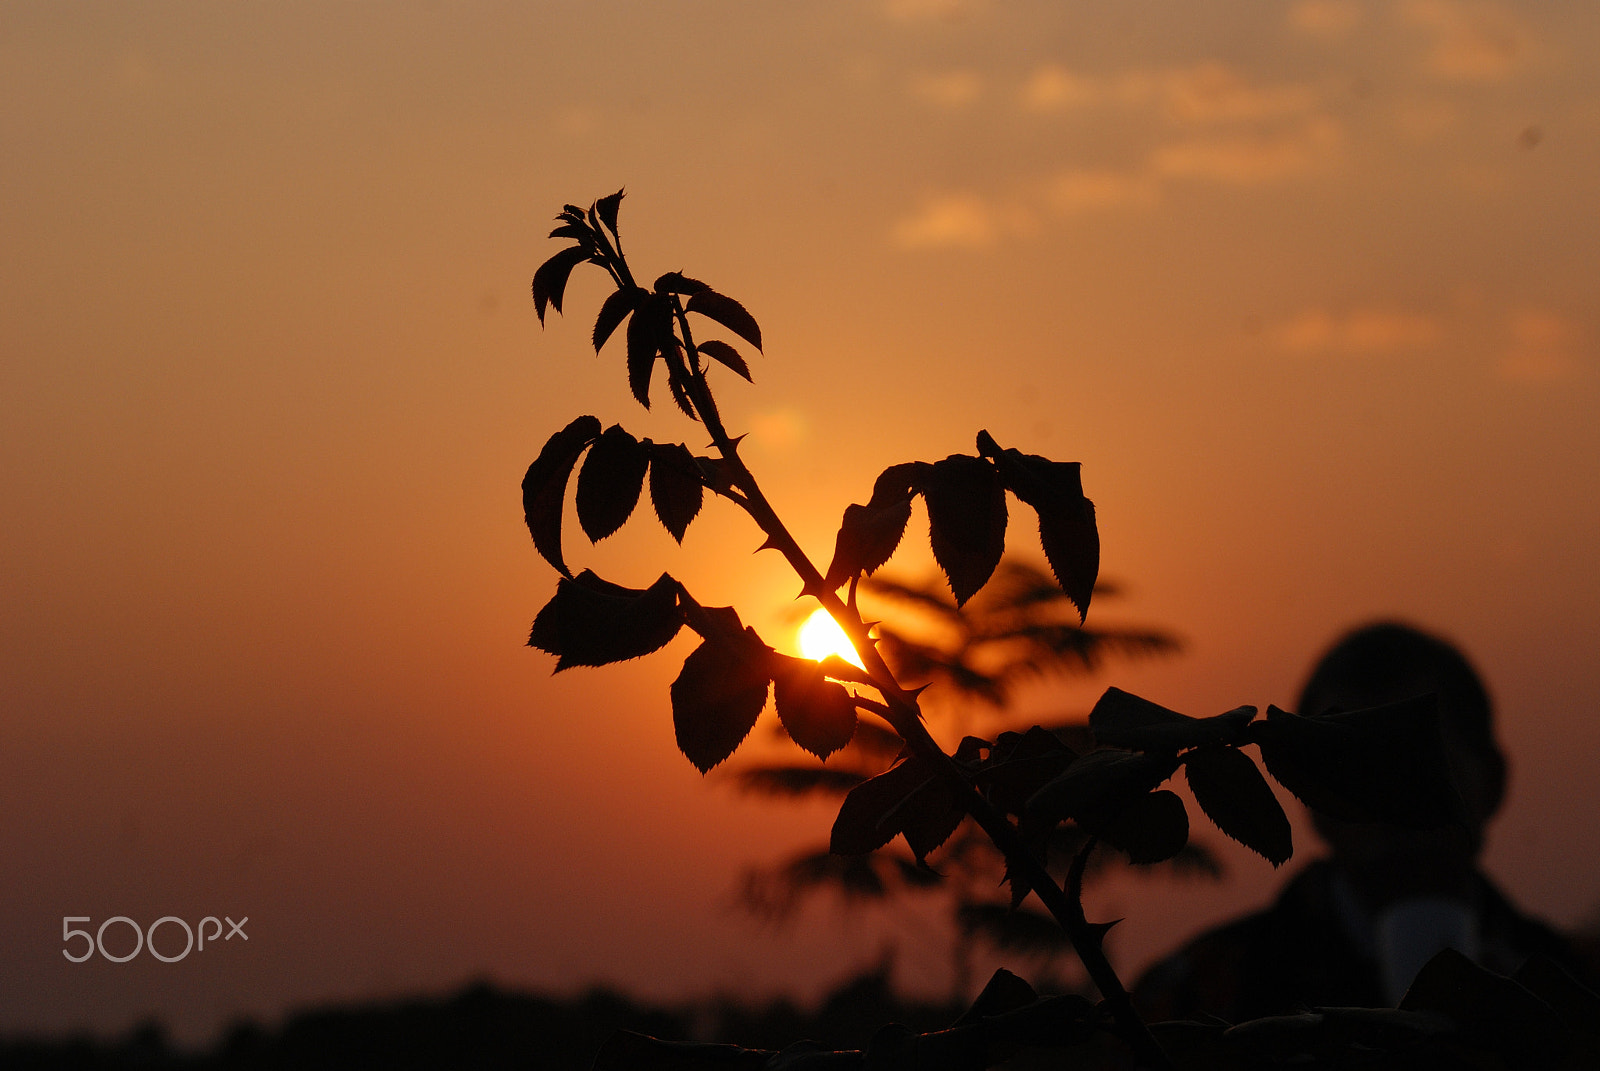 Nikon D80 + AF Nikkor 85mm f/1.8 sample photo. Sunset in malawi photography